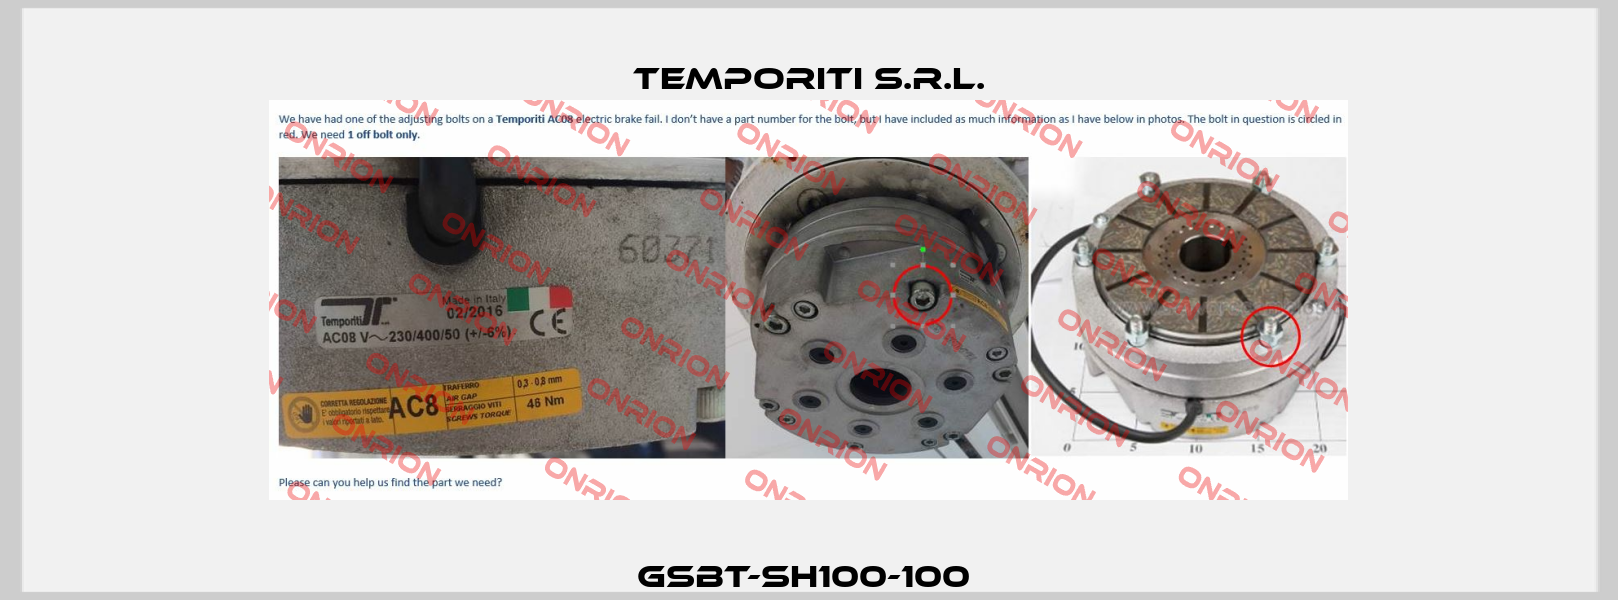 GSBT-SH100-100  Temporiti s.r.l.